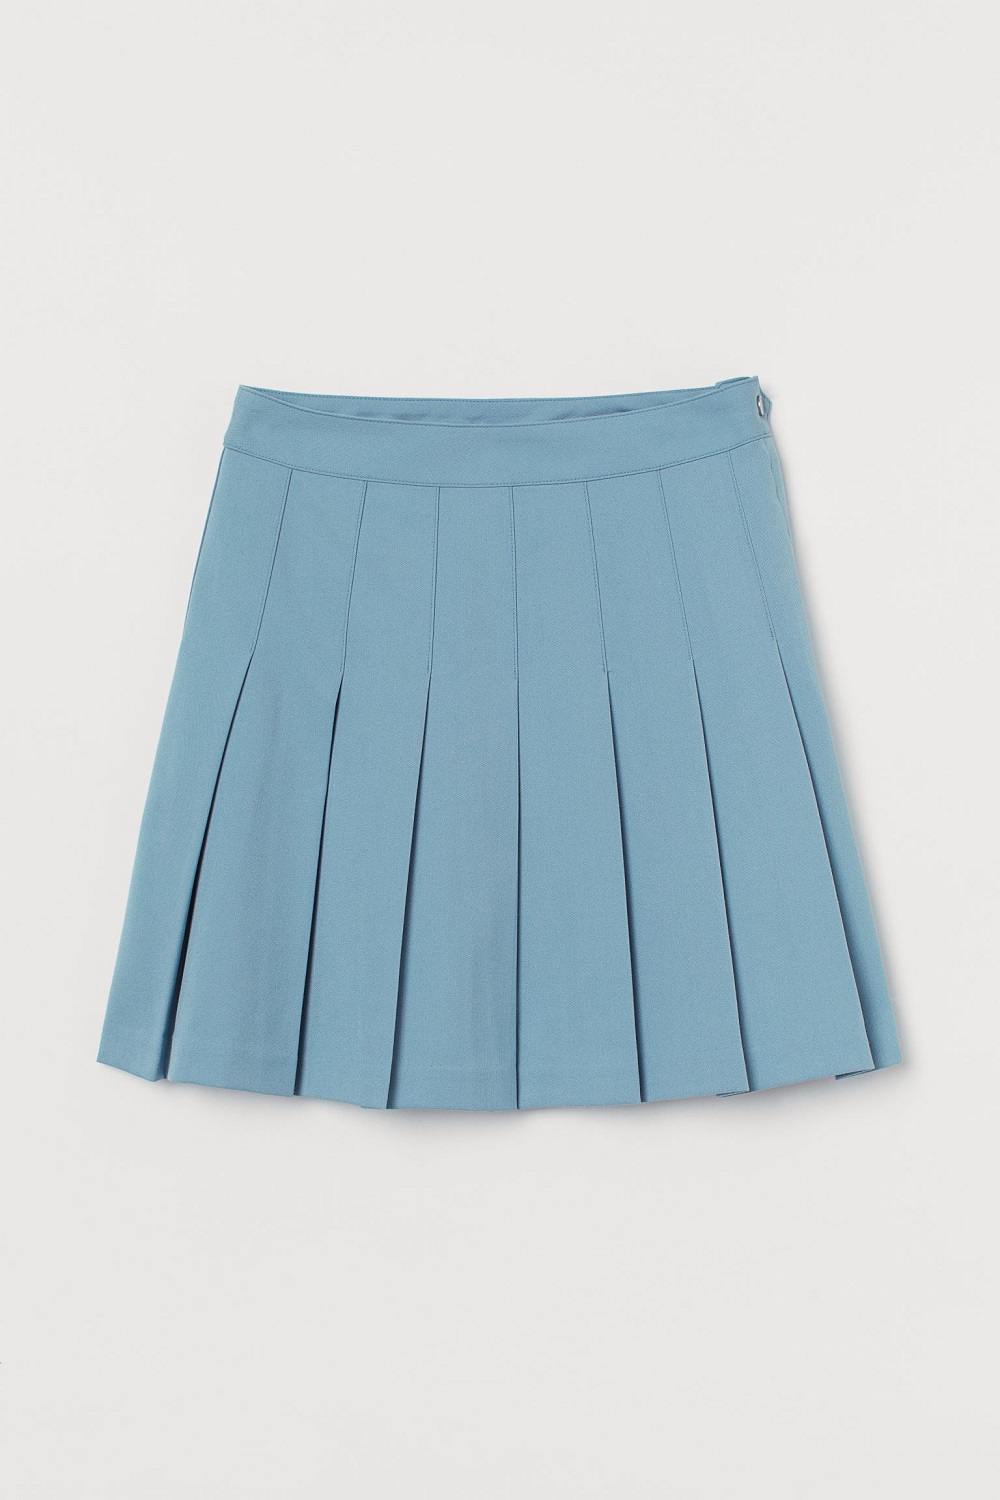 H&M efektna suknja proljeće/ljeto 2021. 